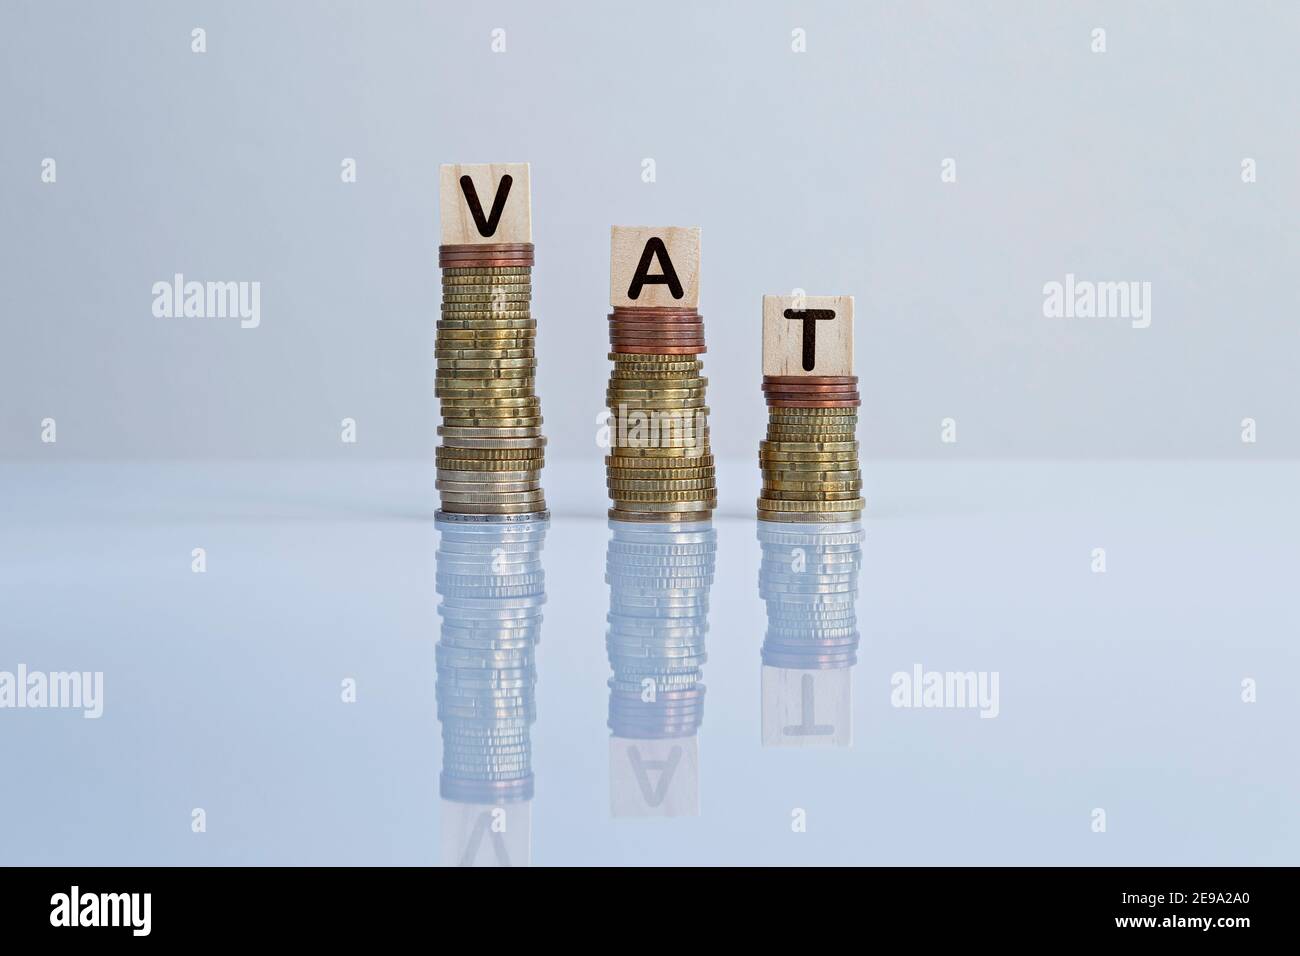 La parola "IVA" sui blocchi di legno in cima alle pile discendenti di monete in grigio. Foto concettuale della riduzione dell'imposta sul valore aggiunto, dell'economia, delle imprese e della finanza Foto Stock